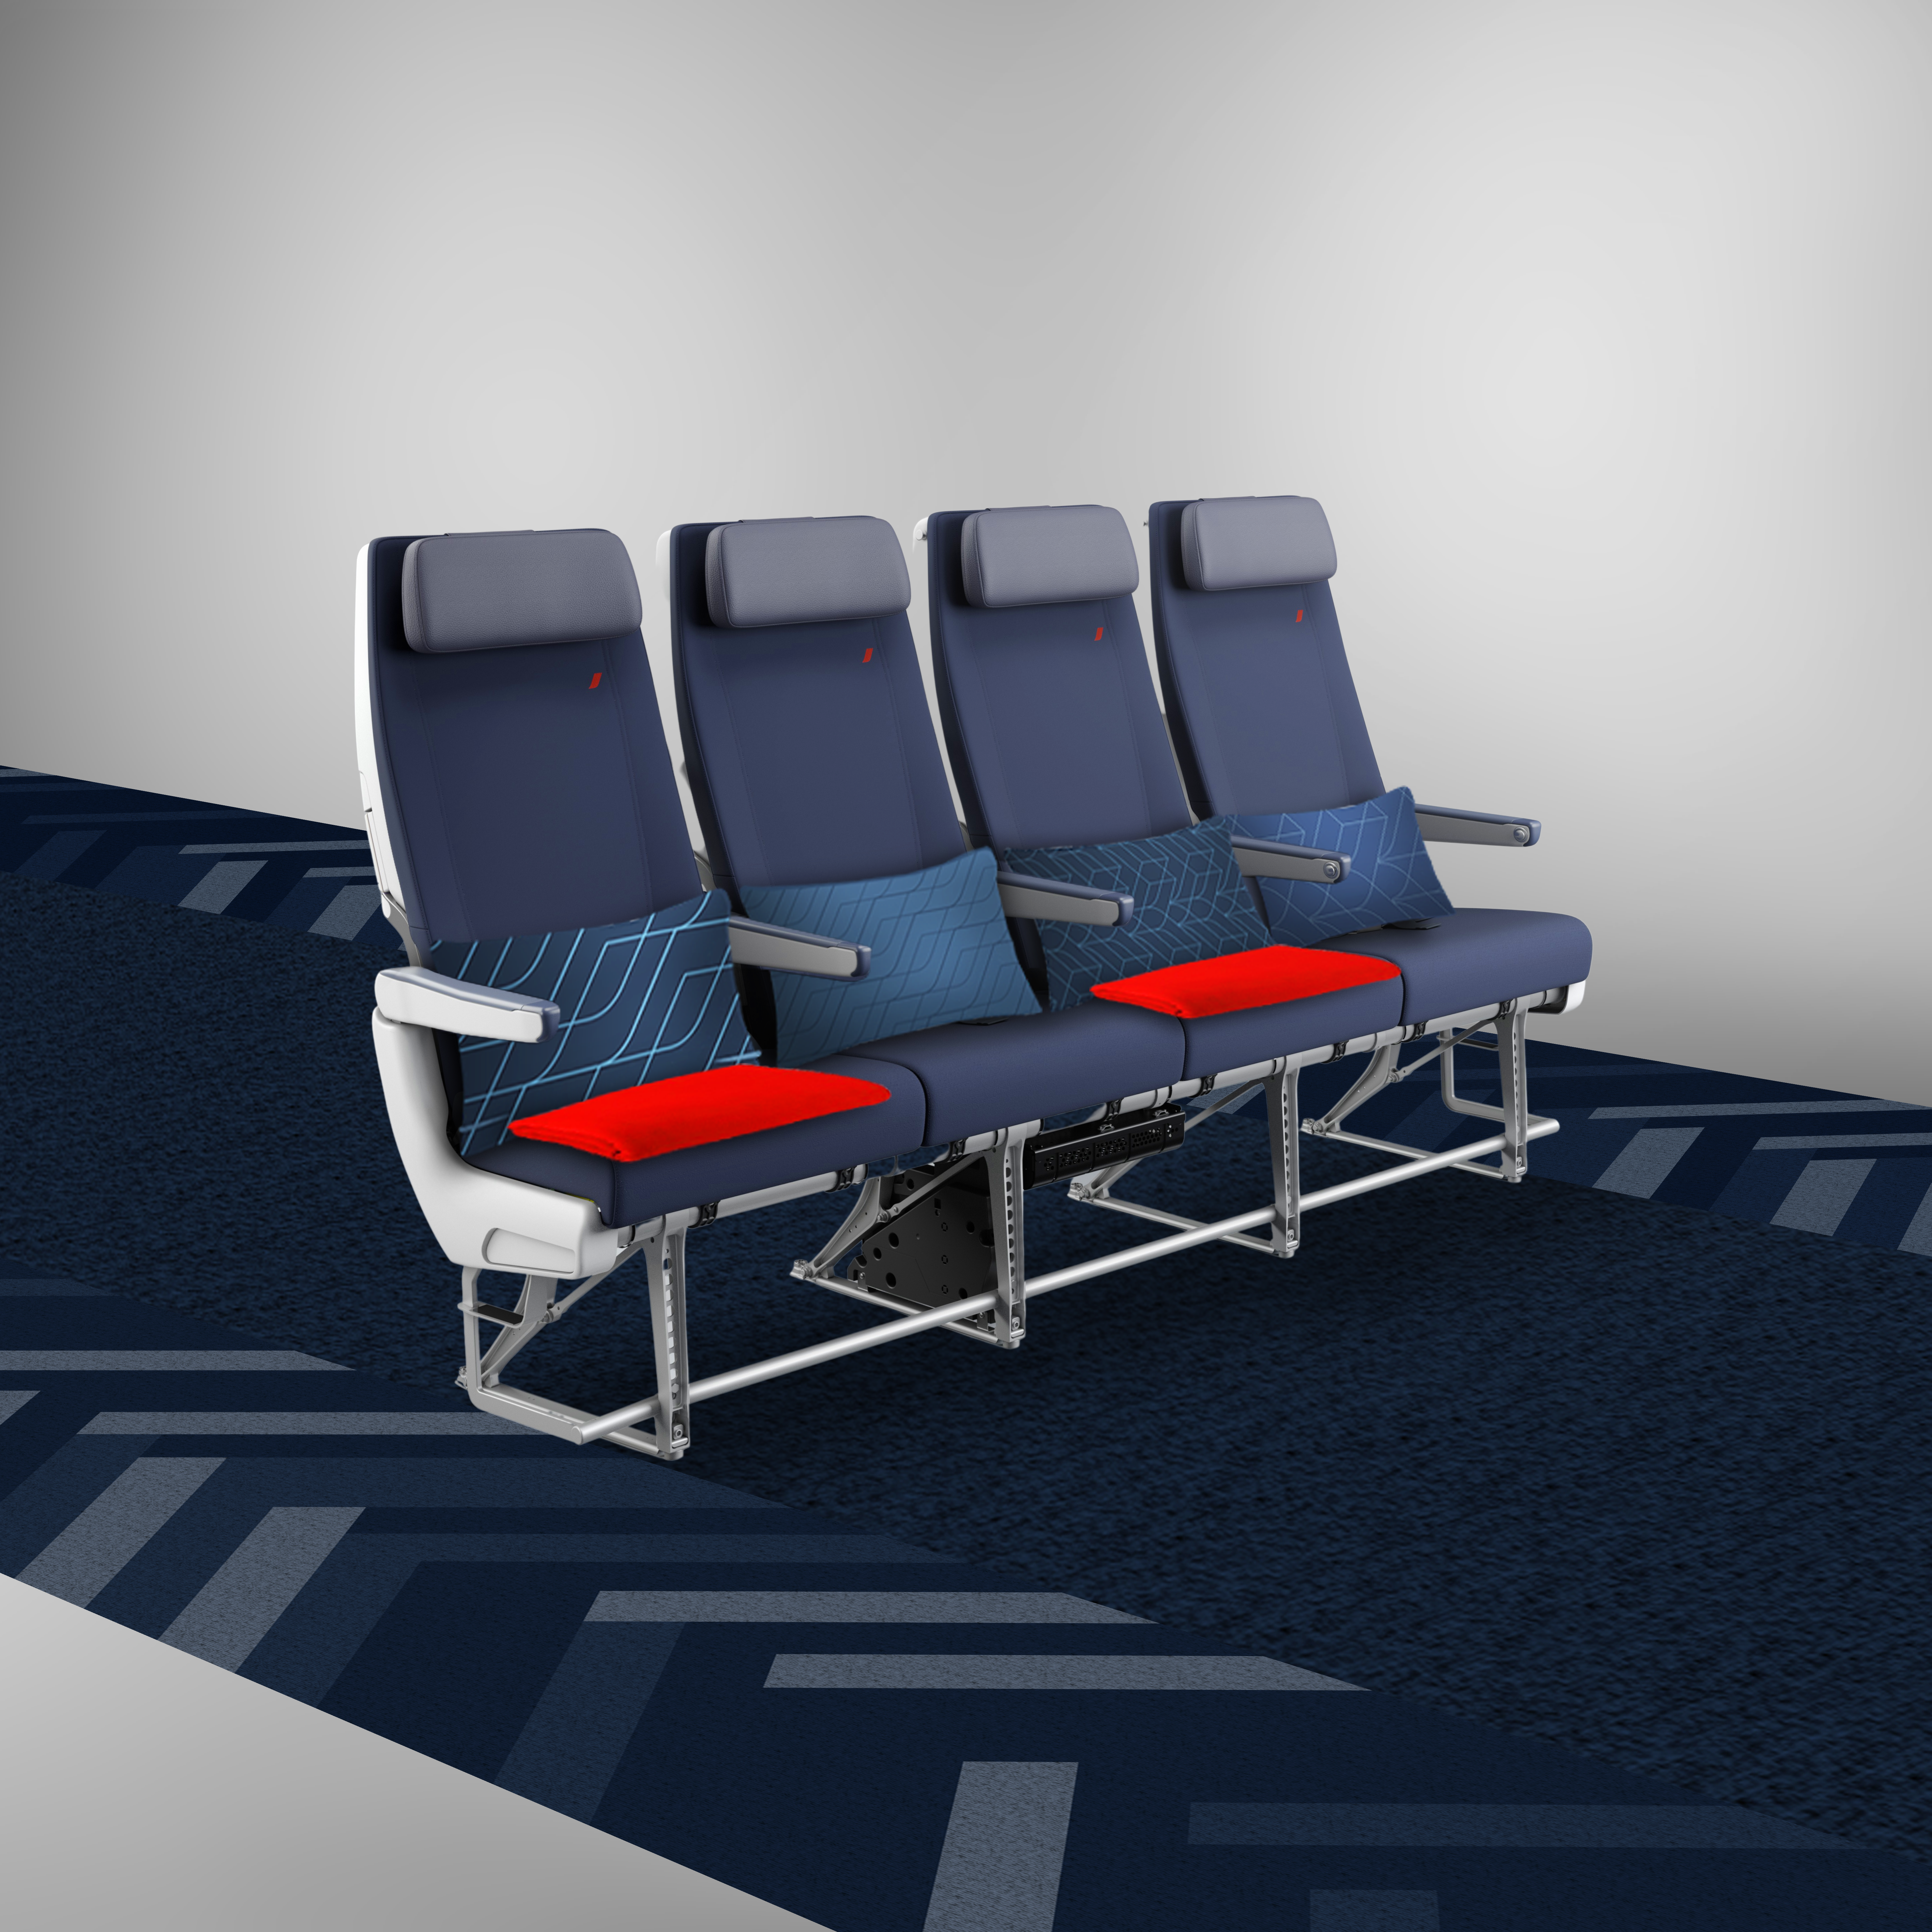 La future classe economy et son espace élargi pour les jambes. Air France